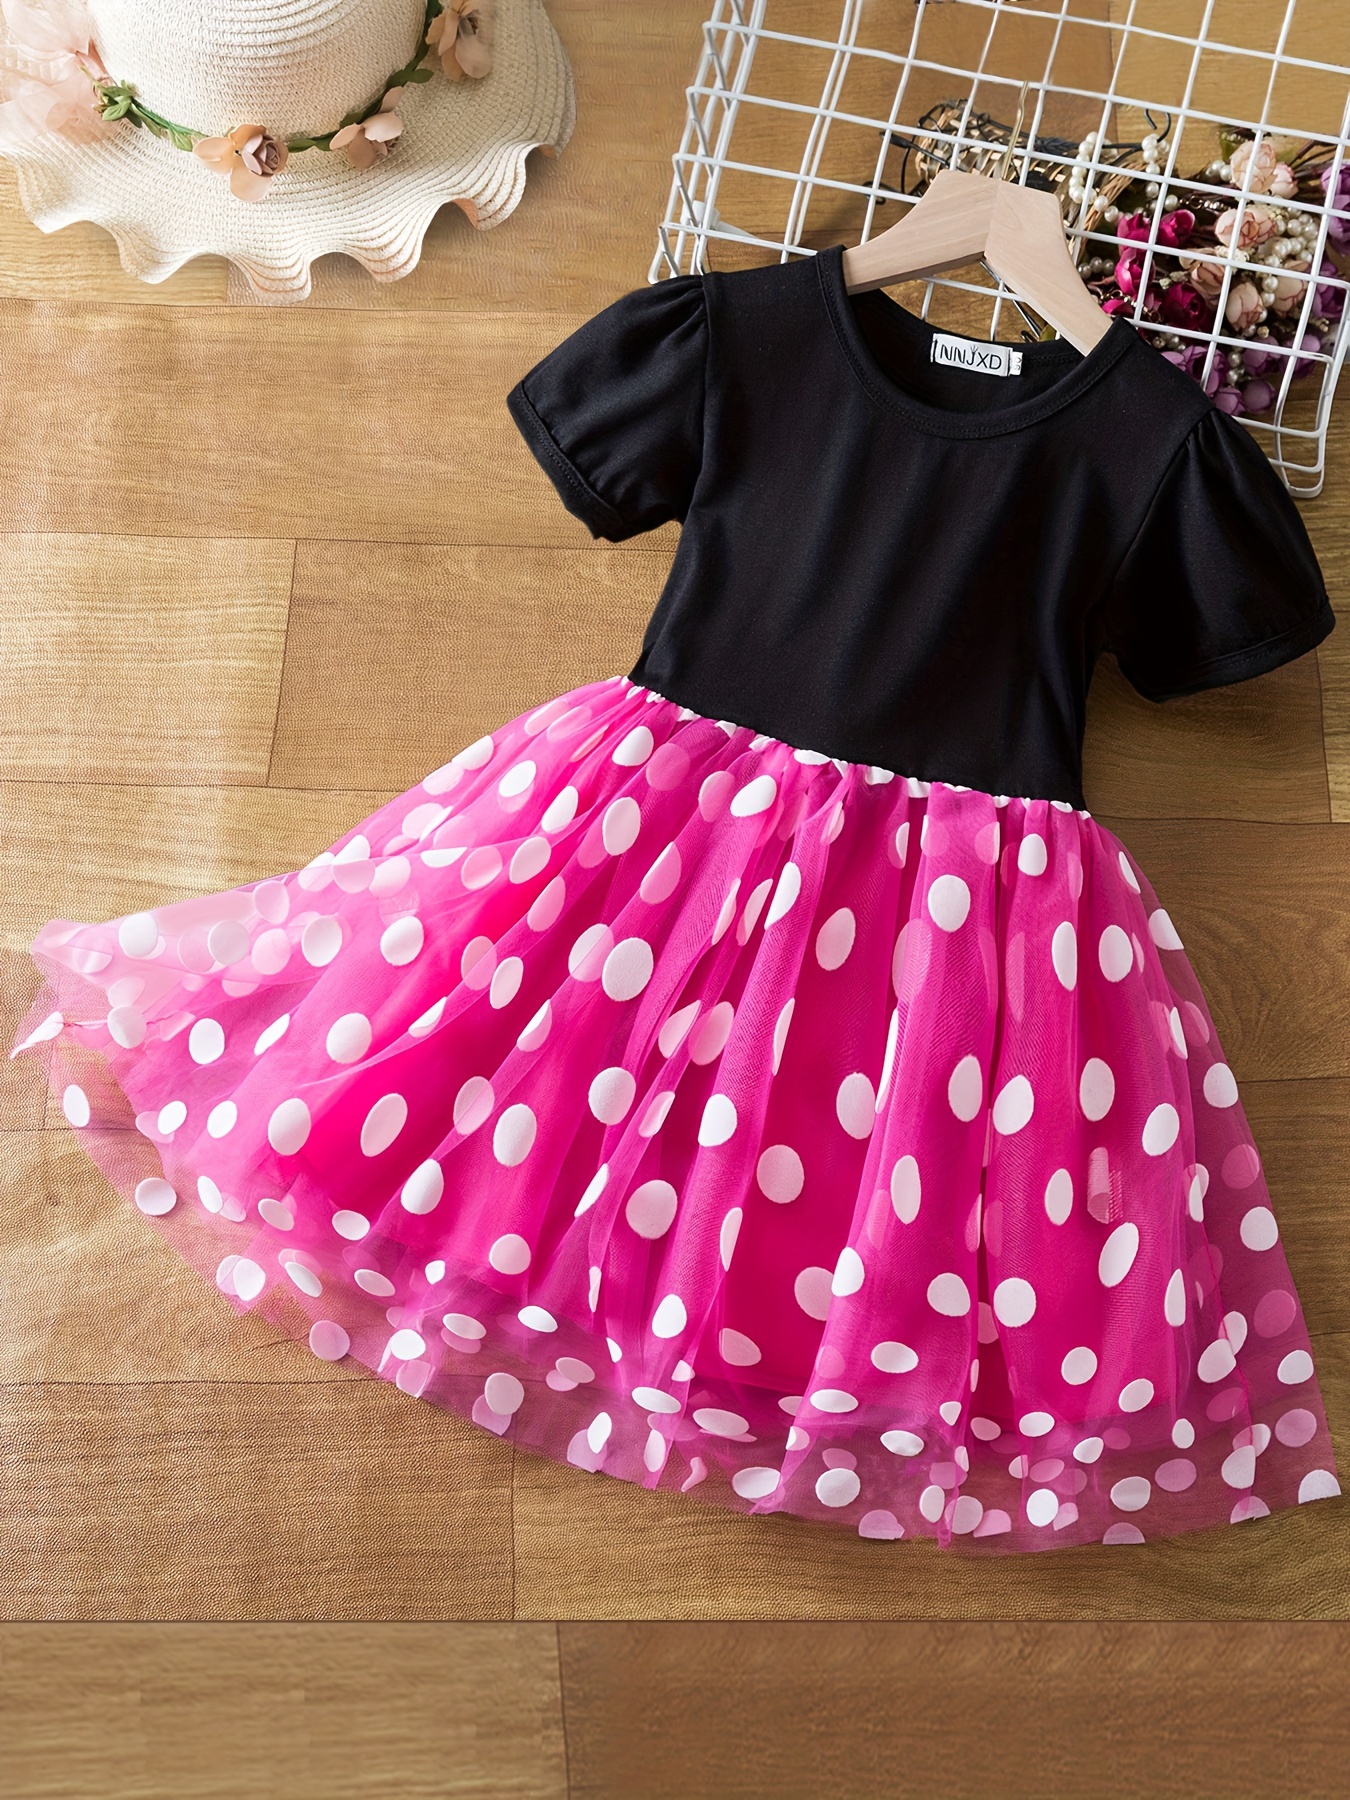 Vestido de Minnie Mouse para niñas pequeñas, ropa de 1, 2, 3, 4, 5, 6, 7  años, disfraz de Halloween para niños, vestido de fiesta de navidad -  AliExpress